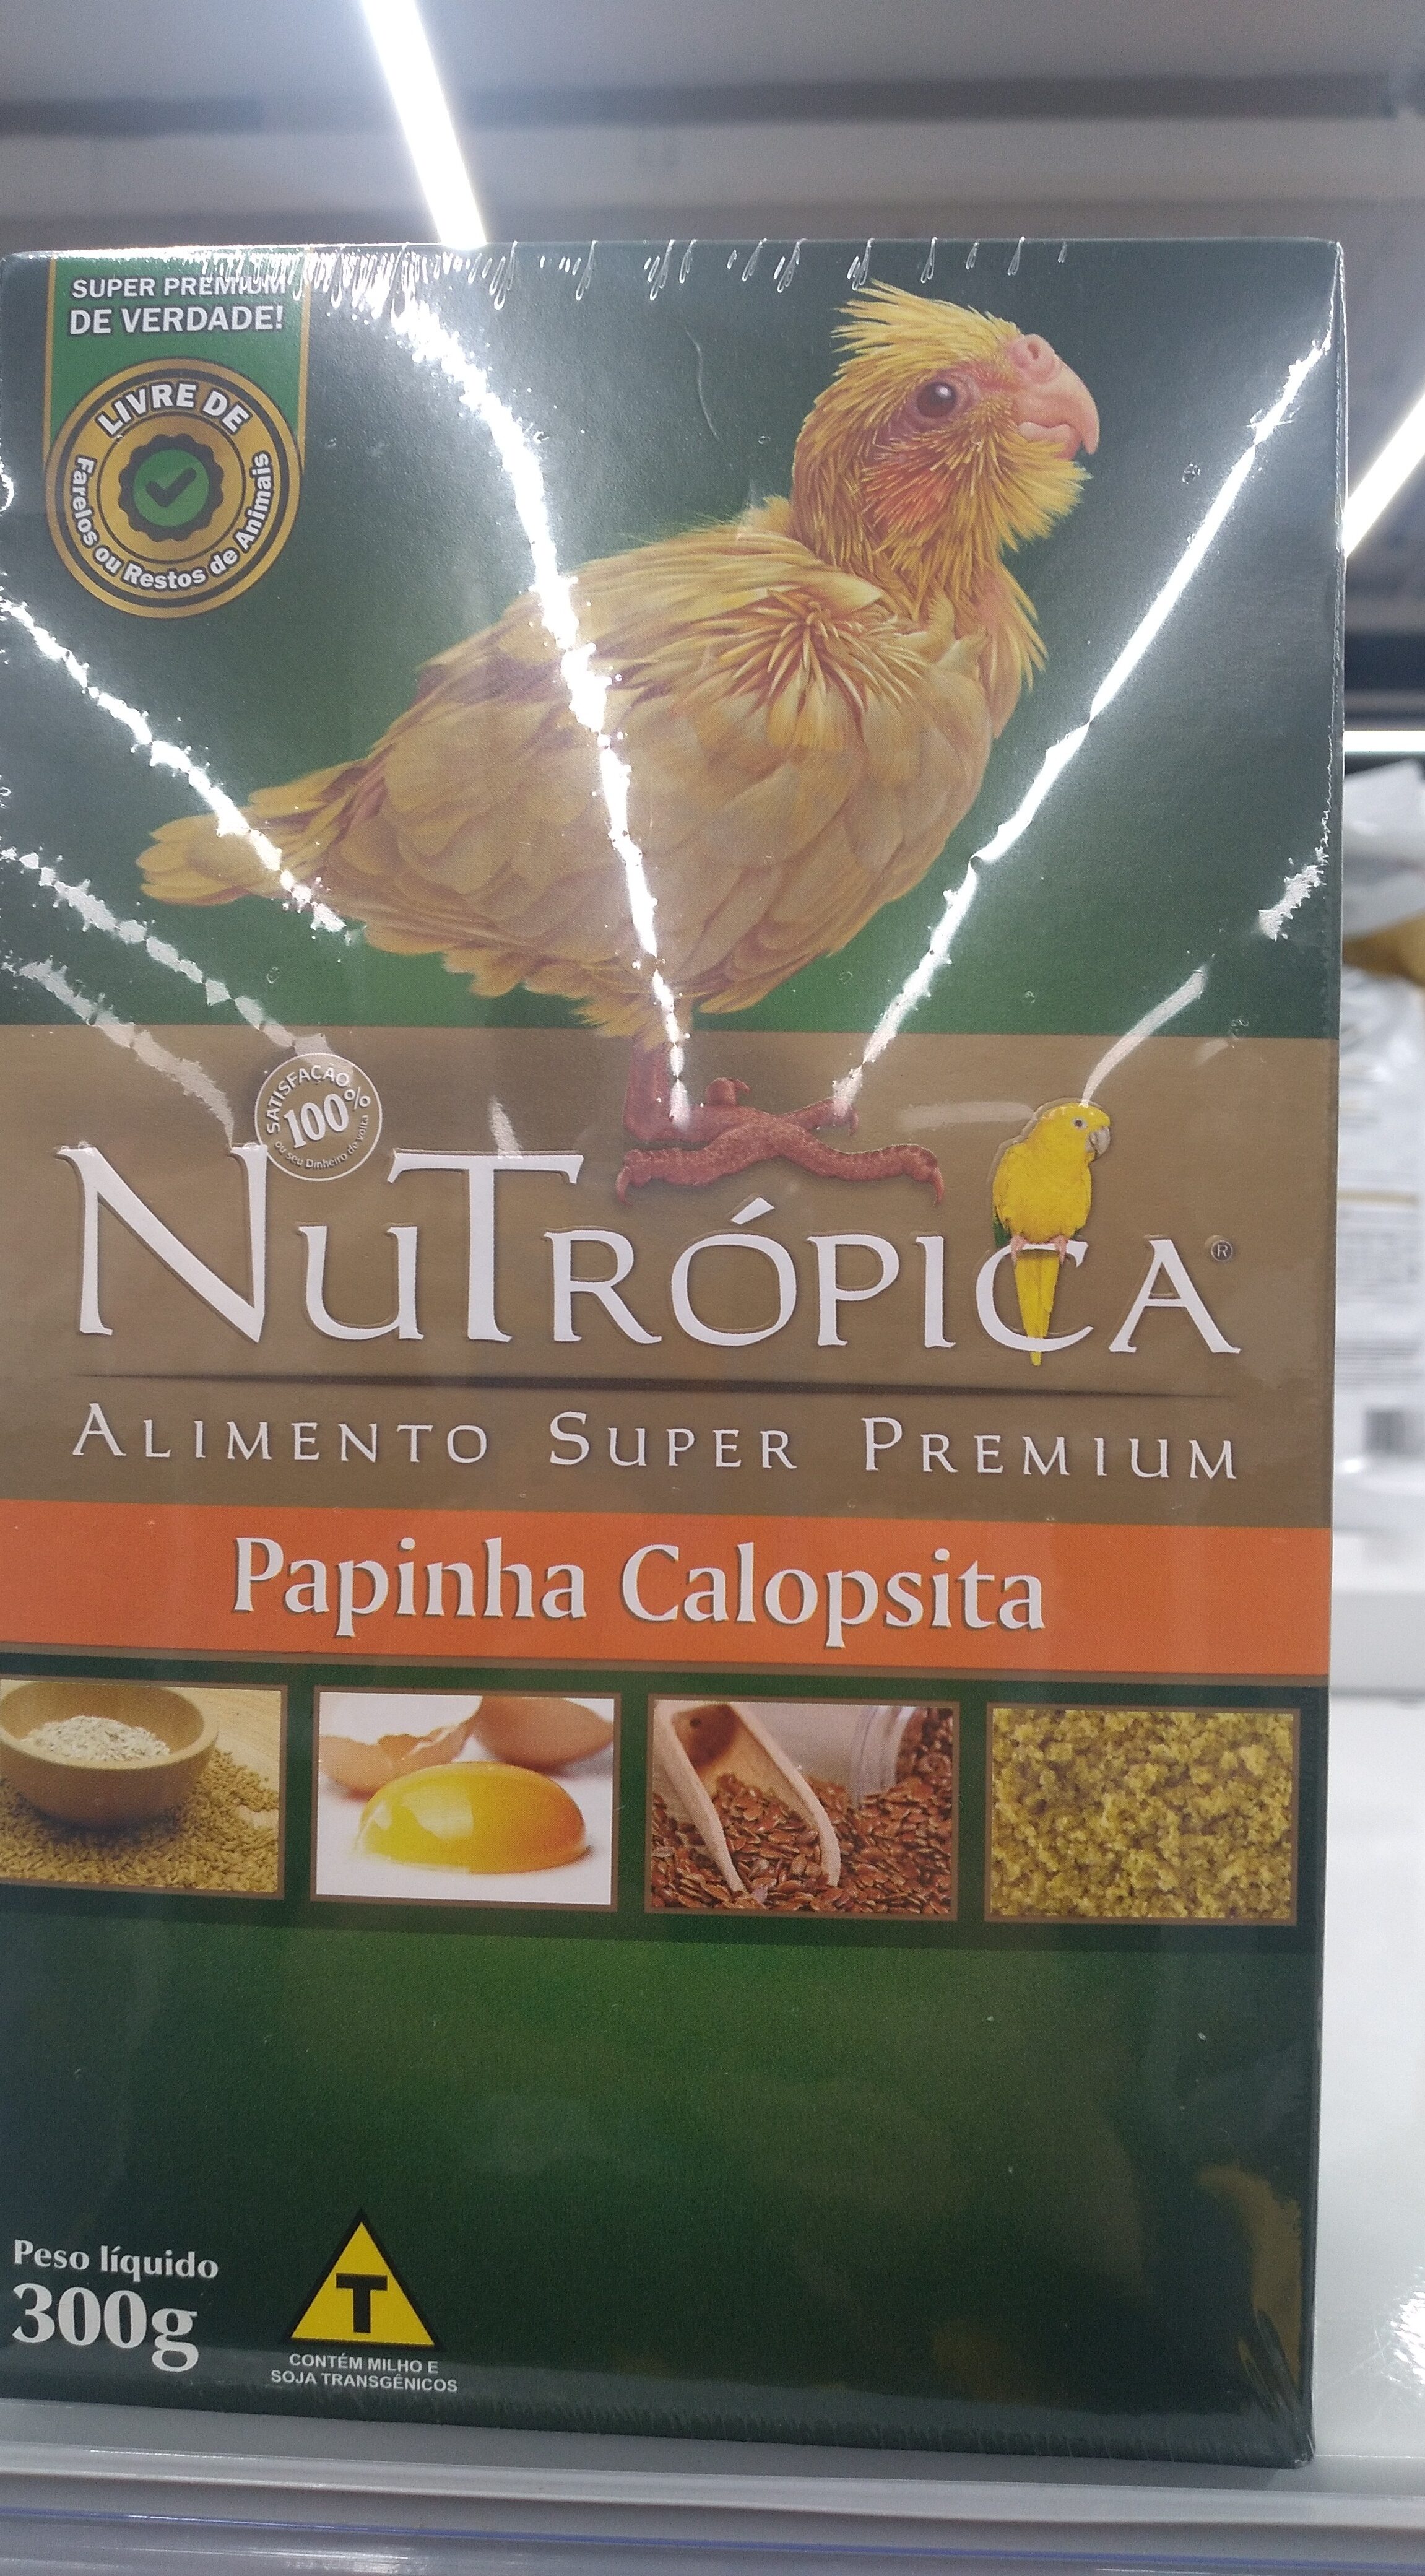 Nutrópica papinha calopsita 300g - Product - pt